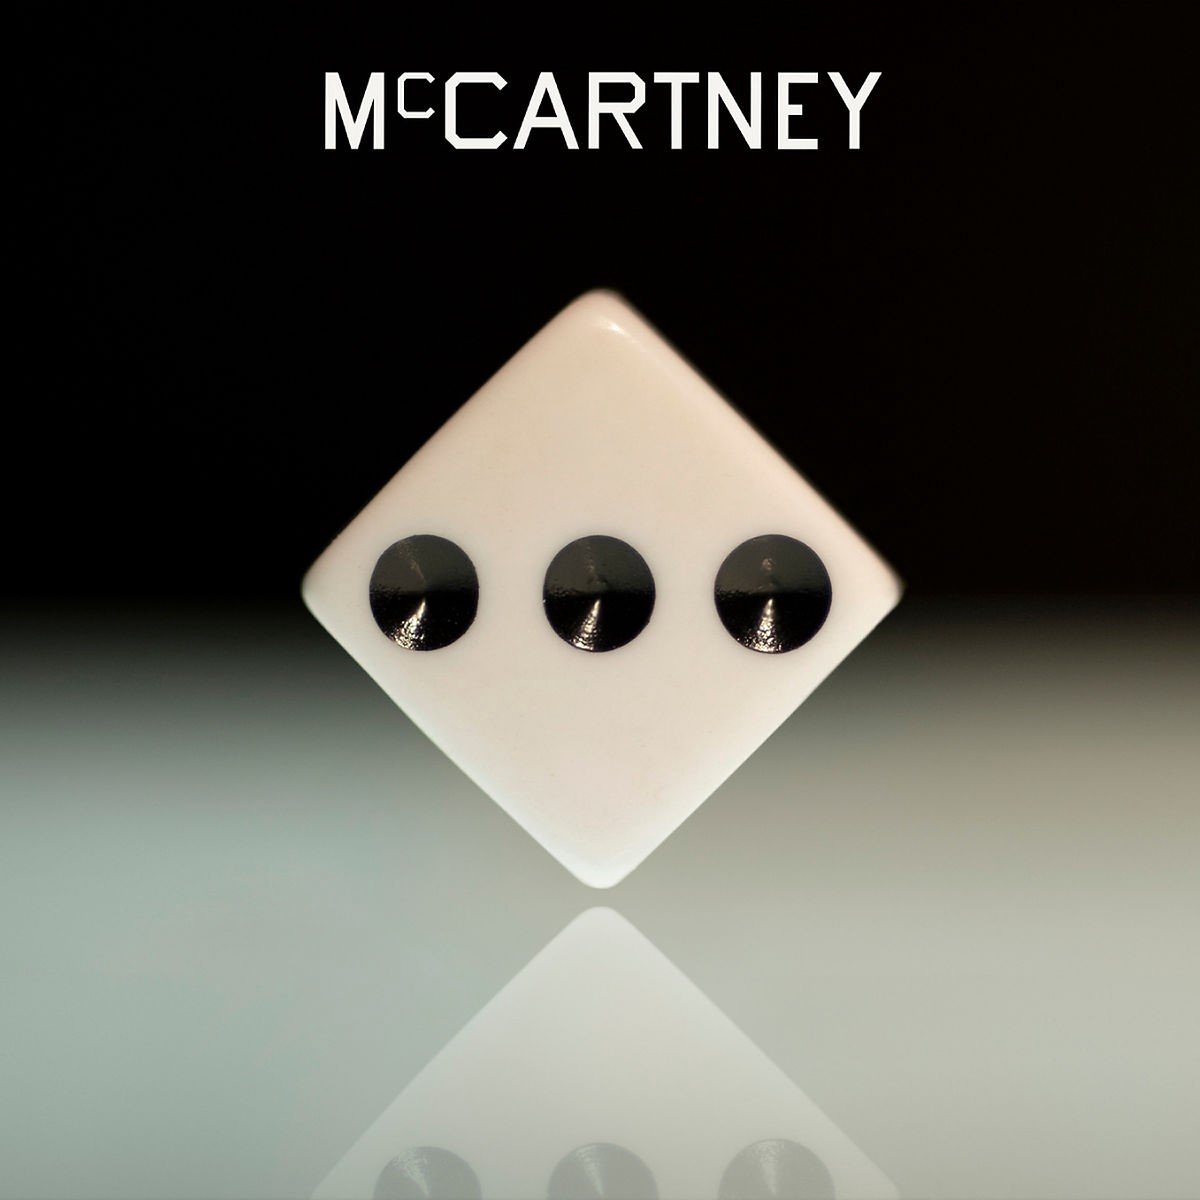 Paul McCartney - McCartney III (CD) - Paul McCartney